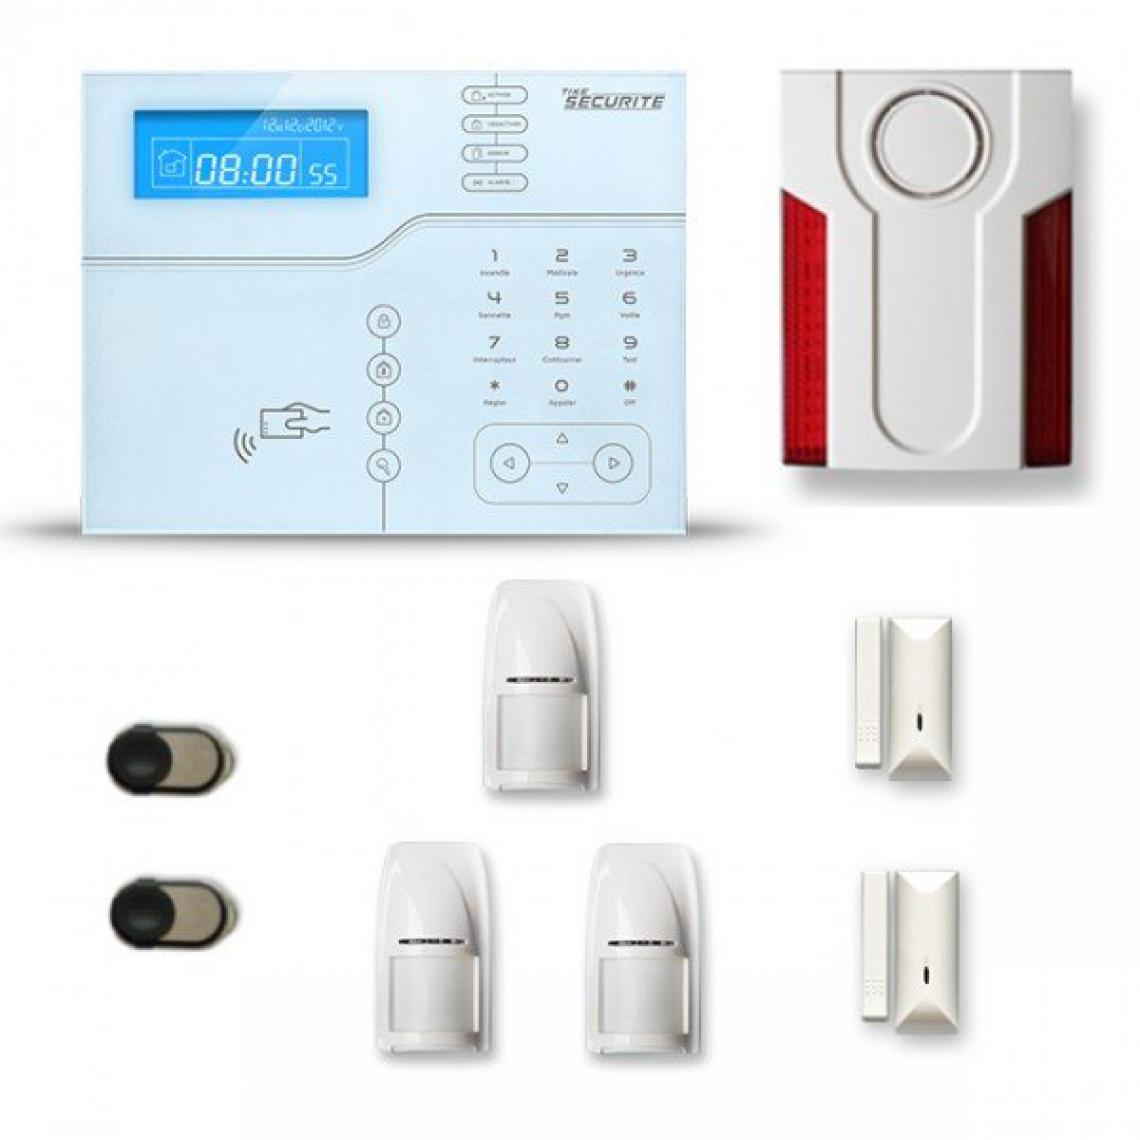 Tike Securite - Alarme maison sans fil SHB27 GSM/IP avec option GSM incluse - Alarme connectée